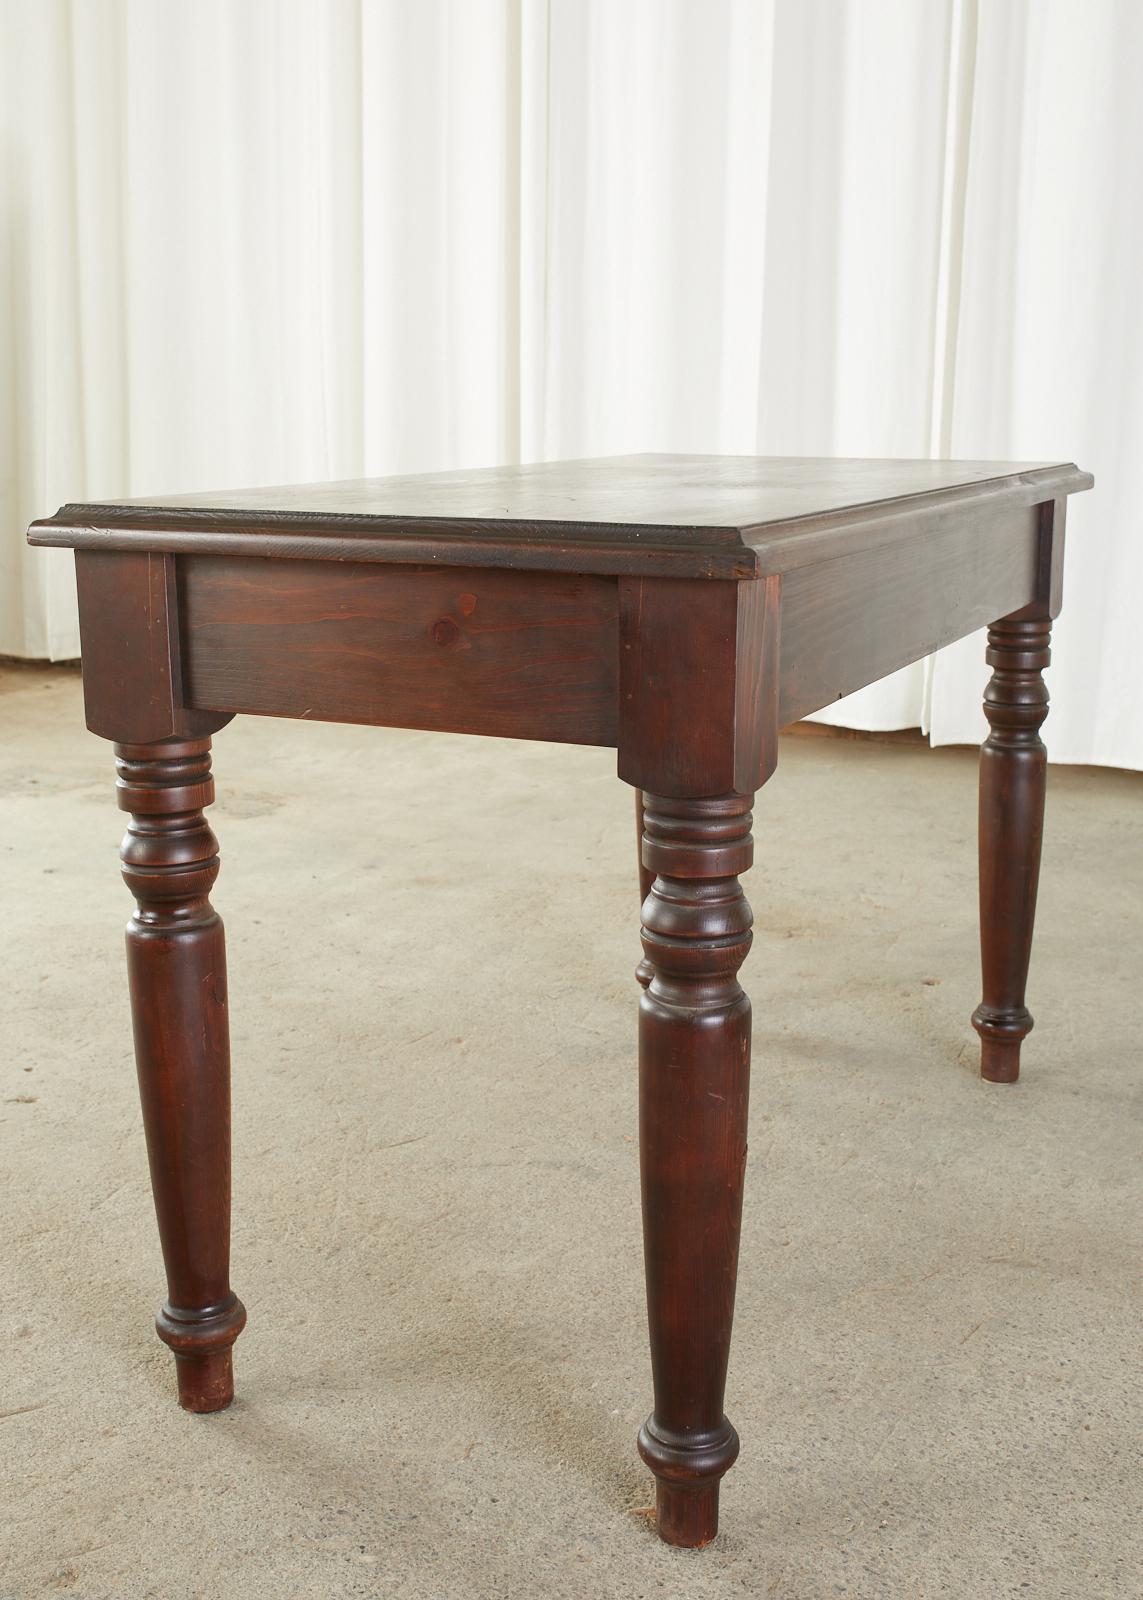 English Edwardian Style Turned Leg Pine Writing Table Desk 7